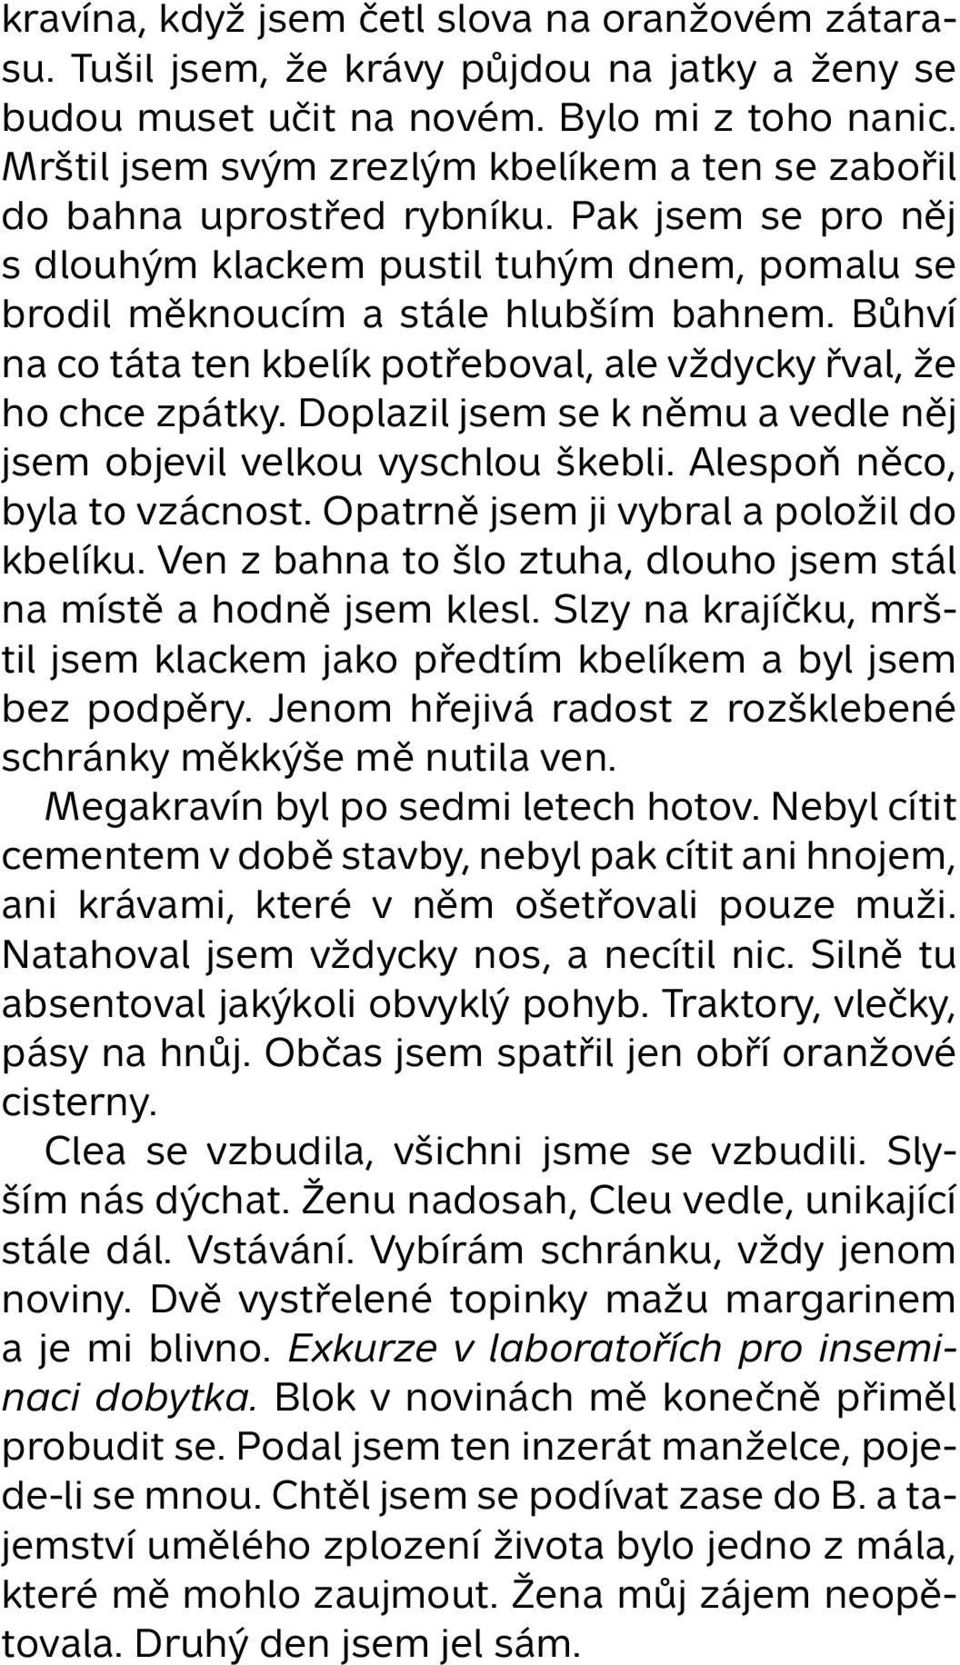 Hana Lundiaková Vrhnout - PDF Stažení zdarma